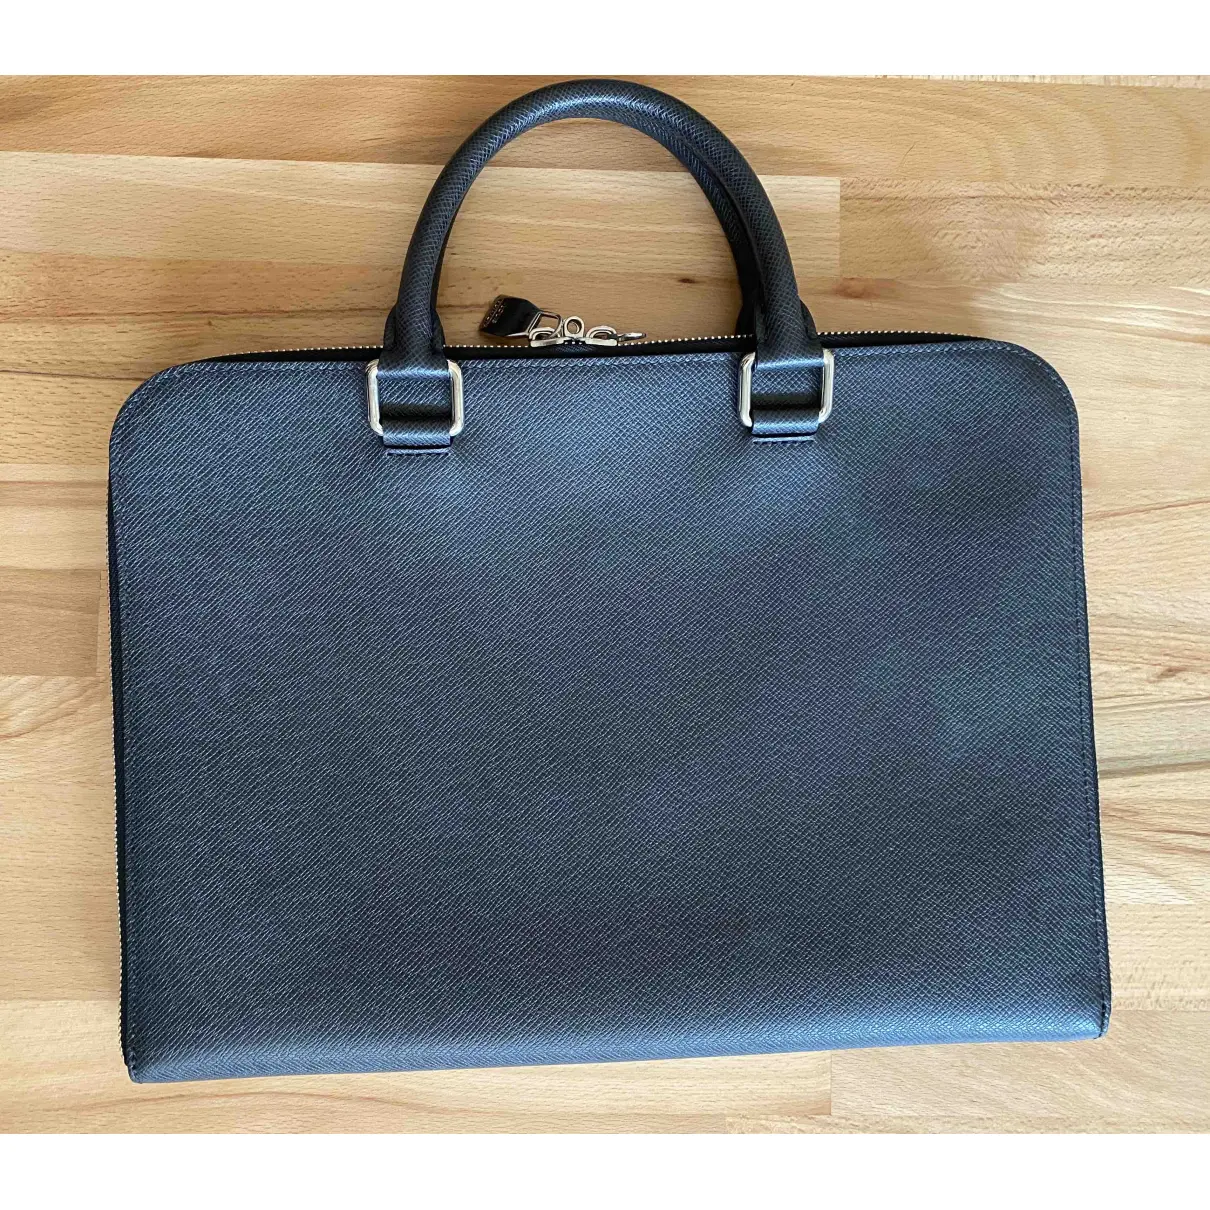 Buy Louis Vuitton Porte Documents Jour leather satchel online